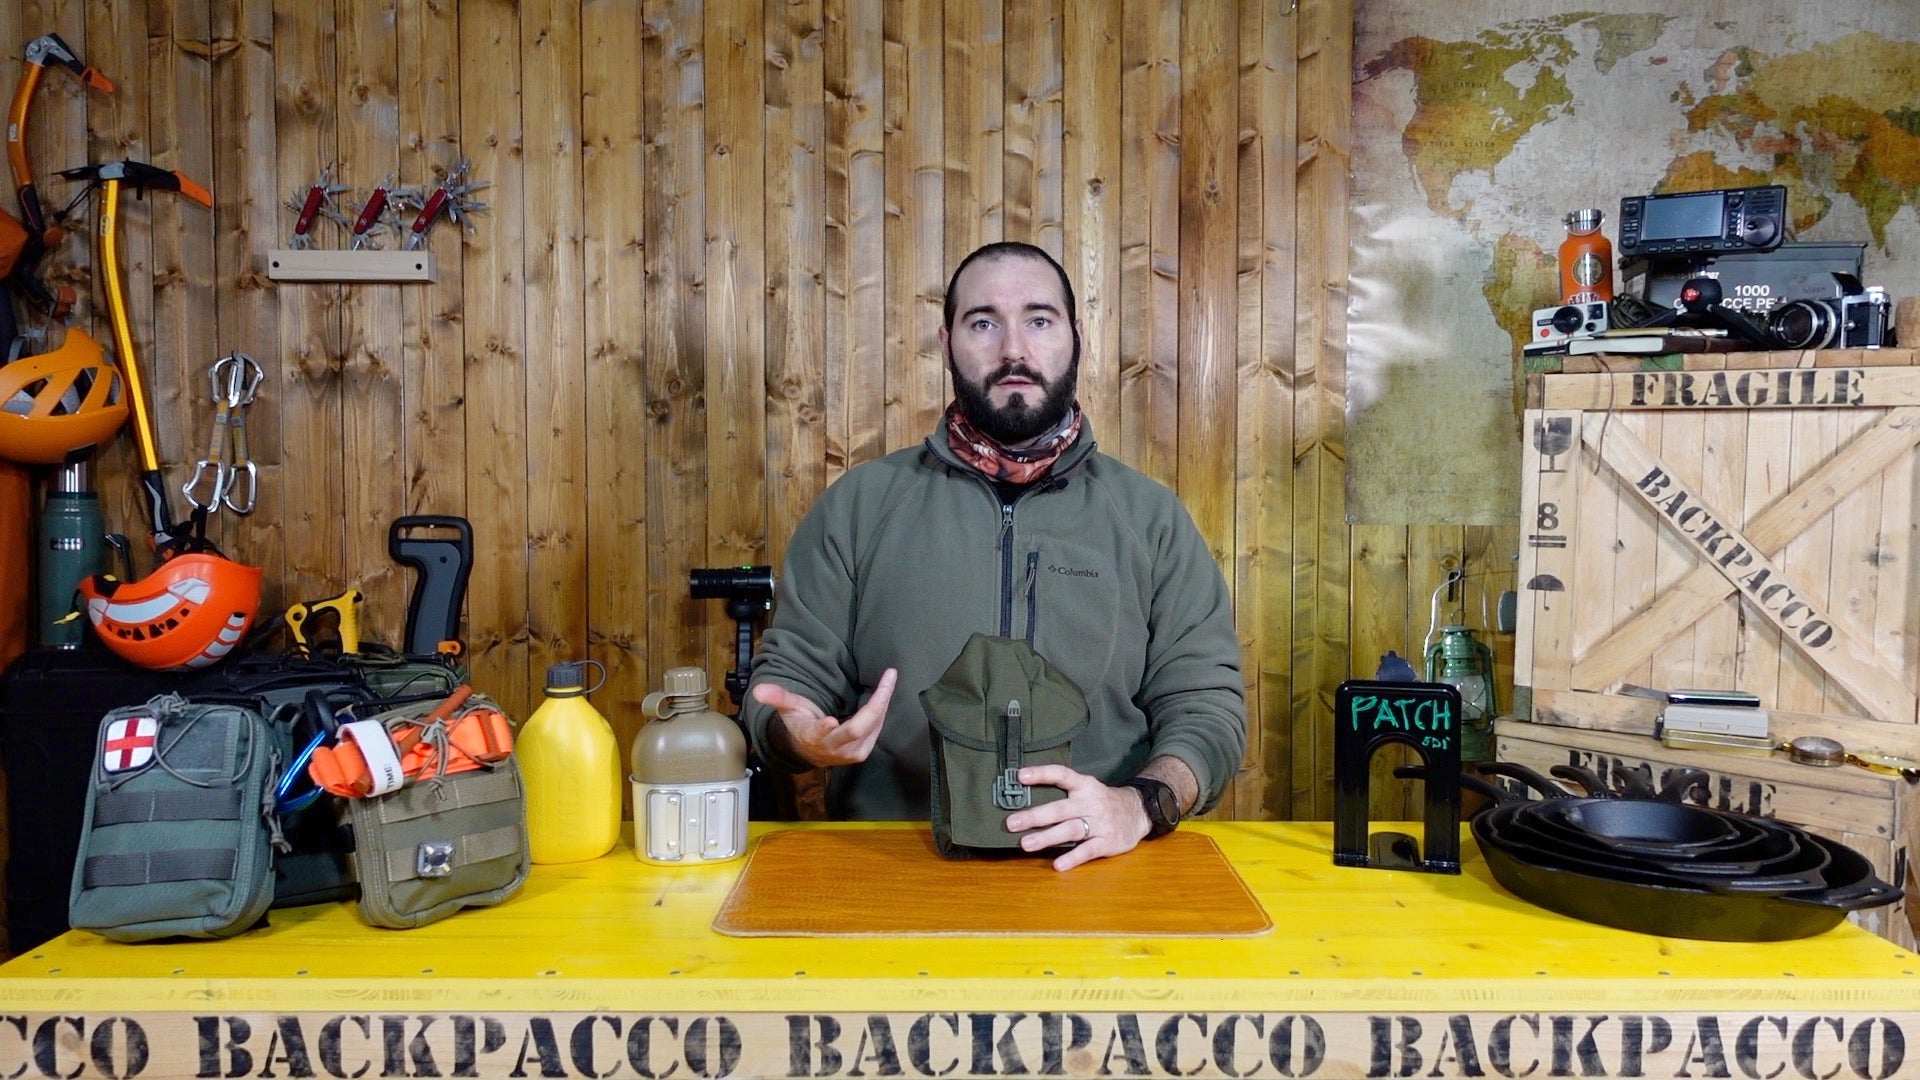 Paolo di backpacco spiega la savotta canteen pouch